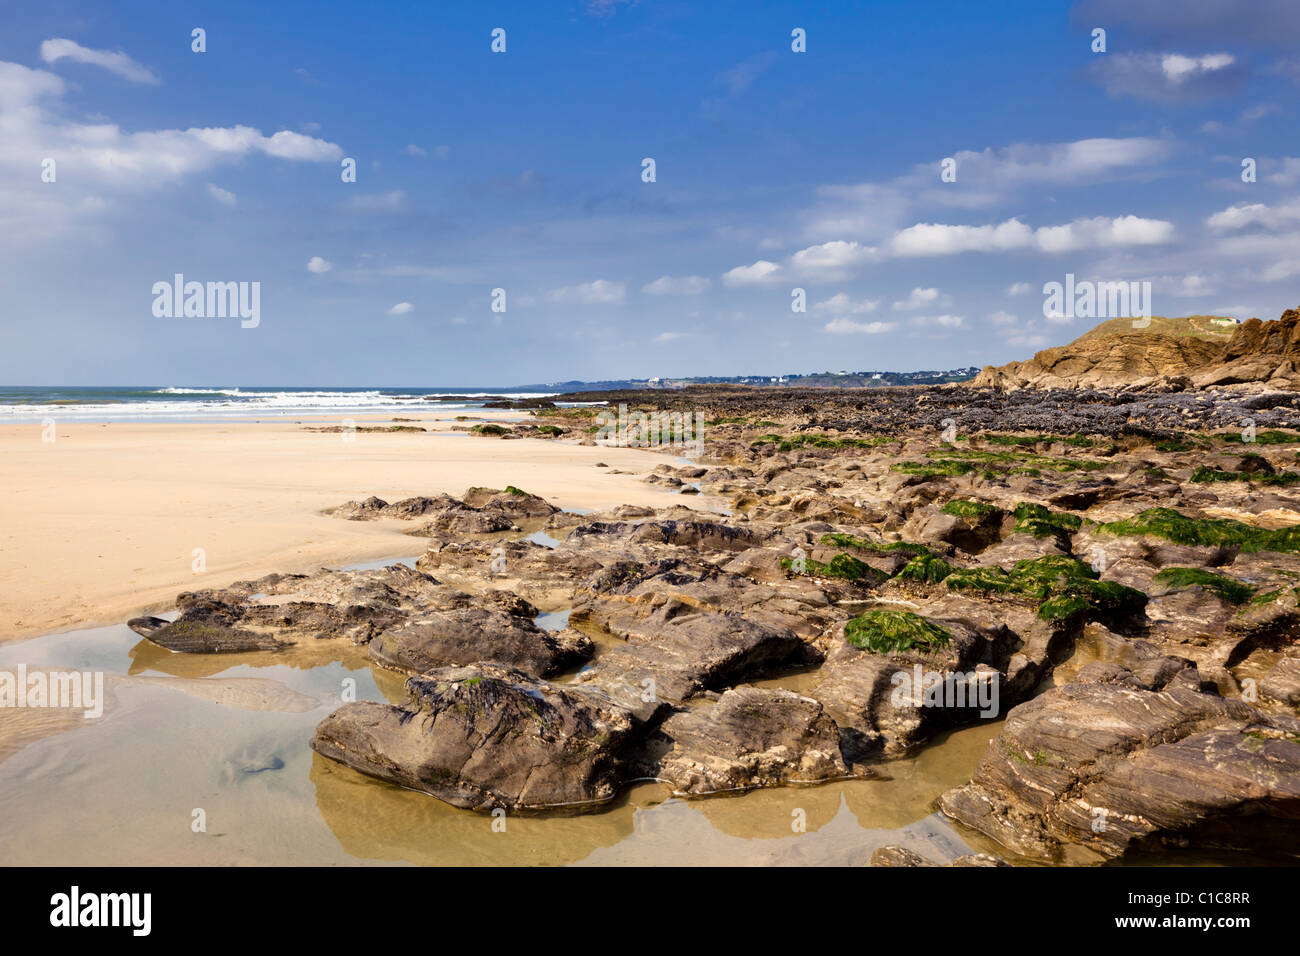 Spiagge della Bretagna, Francia - Spiaggia e scogli a Guidel Plages, vicino a Lorient, Morbihan, in Bretagna, Francia. Foto Stock